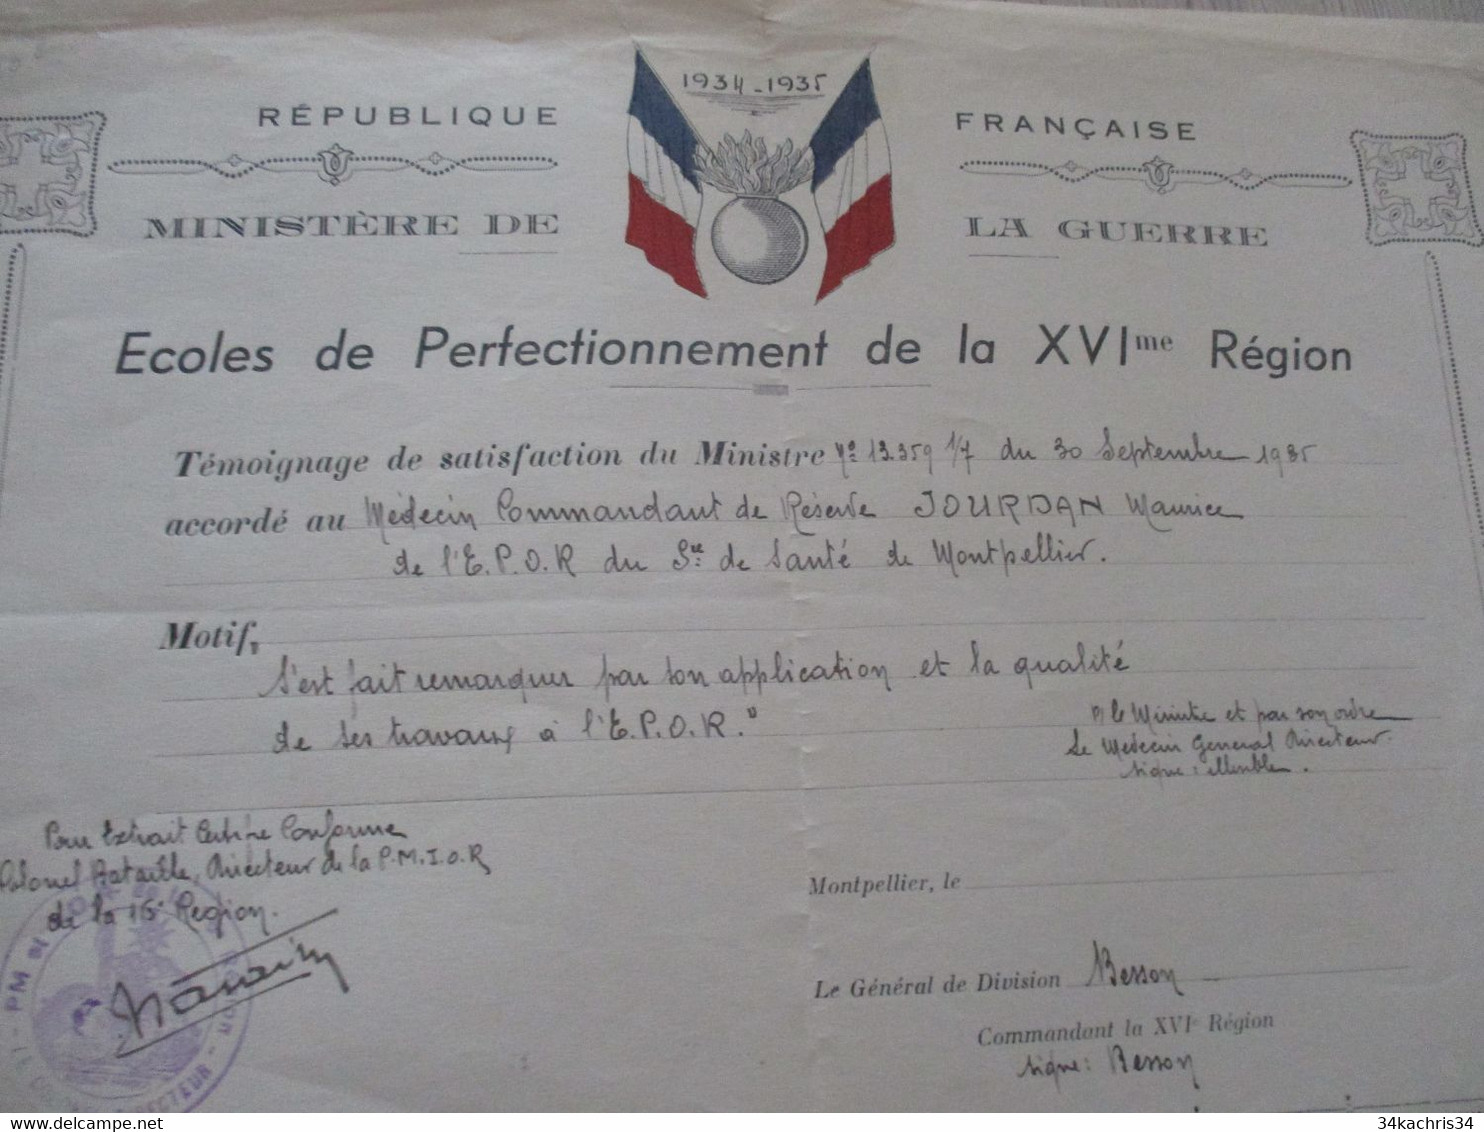 Diplôme Militaire 1934/1935 Ecoles De Perfectionnement De La XVI ème Région Témoignage Stisfacion Jourdan Montpellier - Diplômes & Bulletins Scolaires